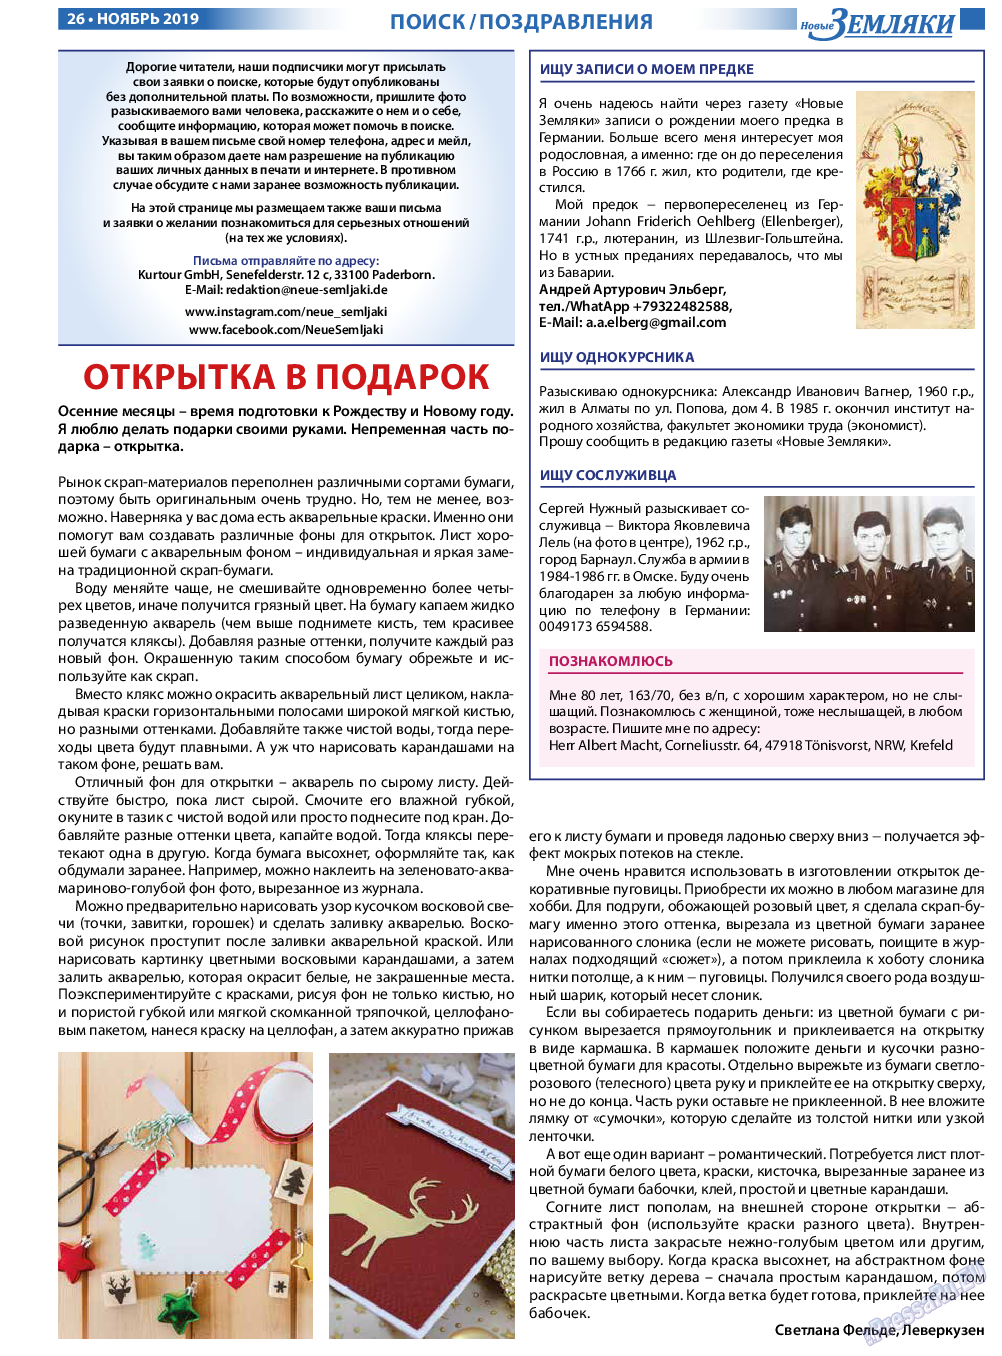 Новые Земляки, газета. 2019 №11 стр.26